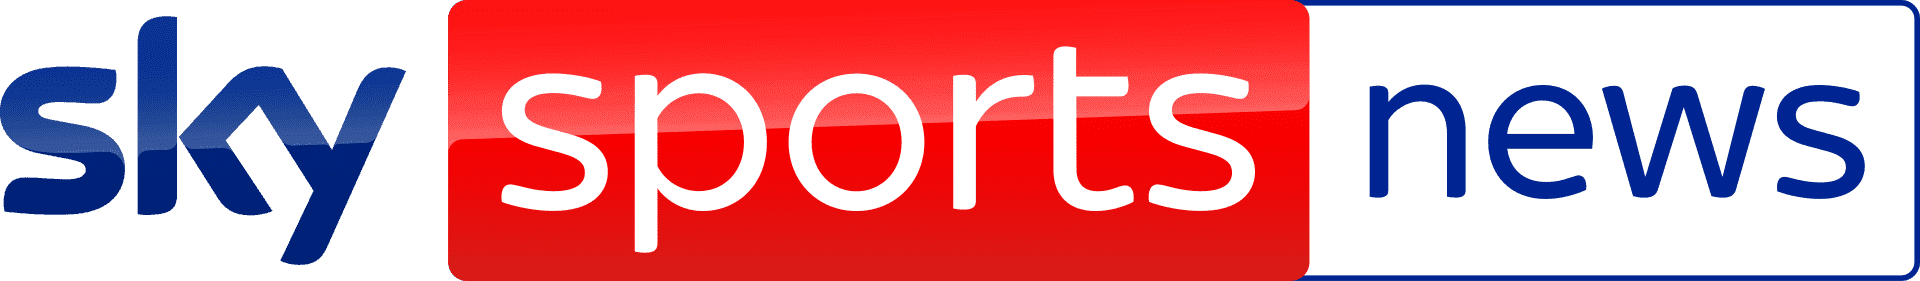 Sky_sports_news_2021_logo.svg